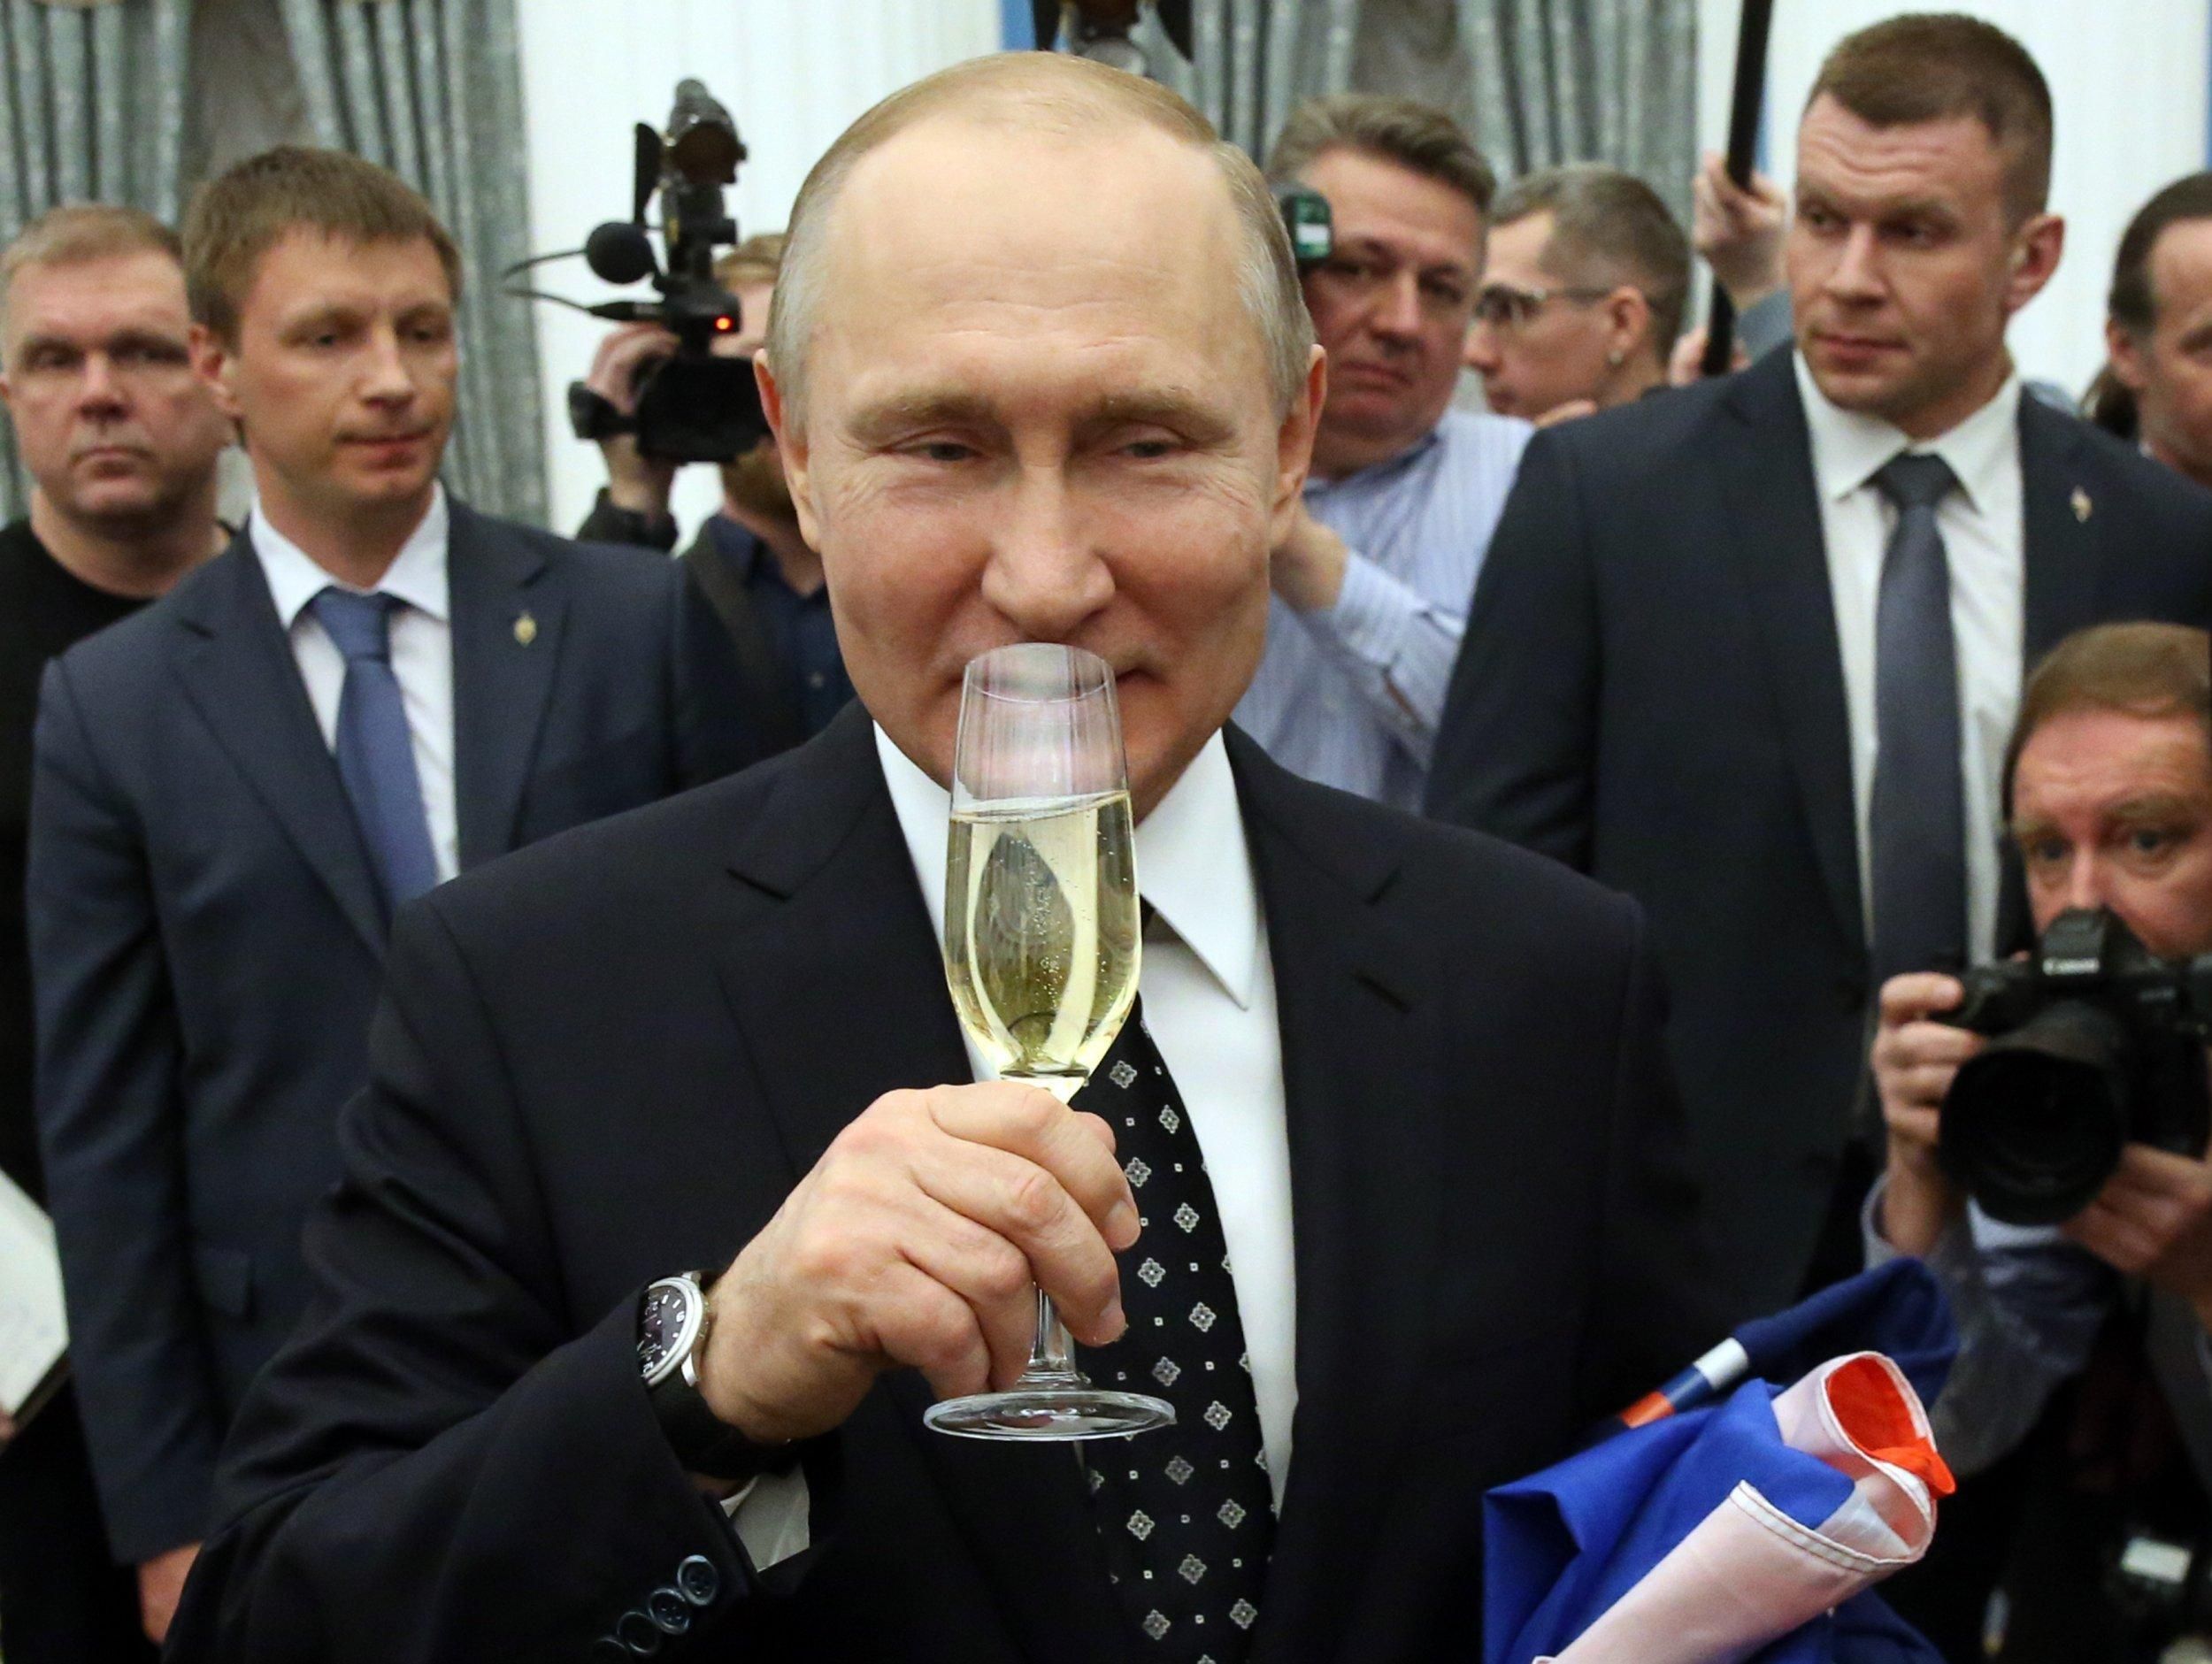  Через что Путин теряет контроль внутри России